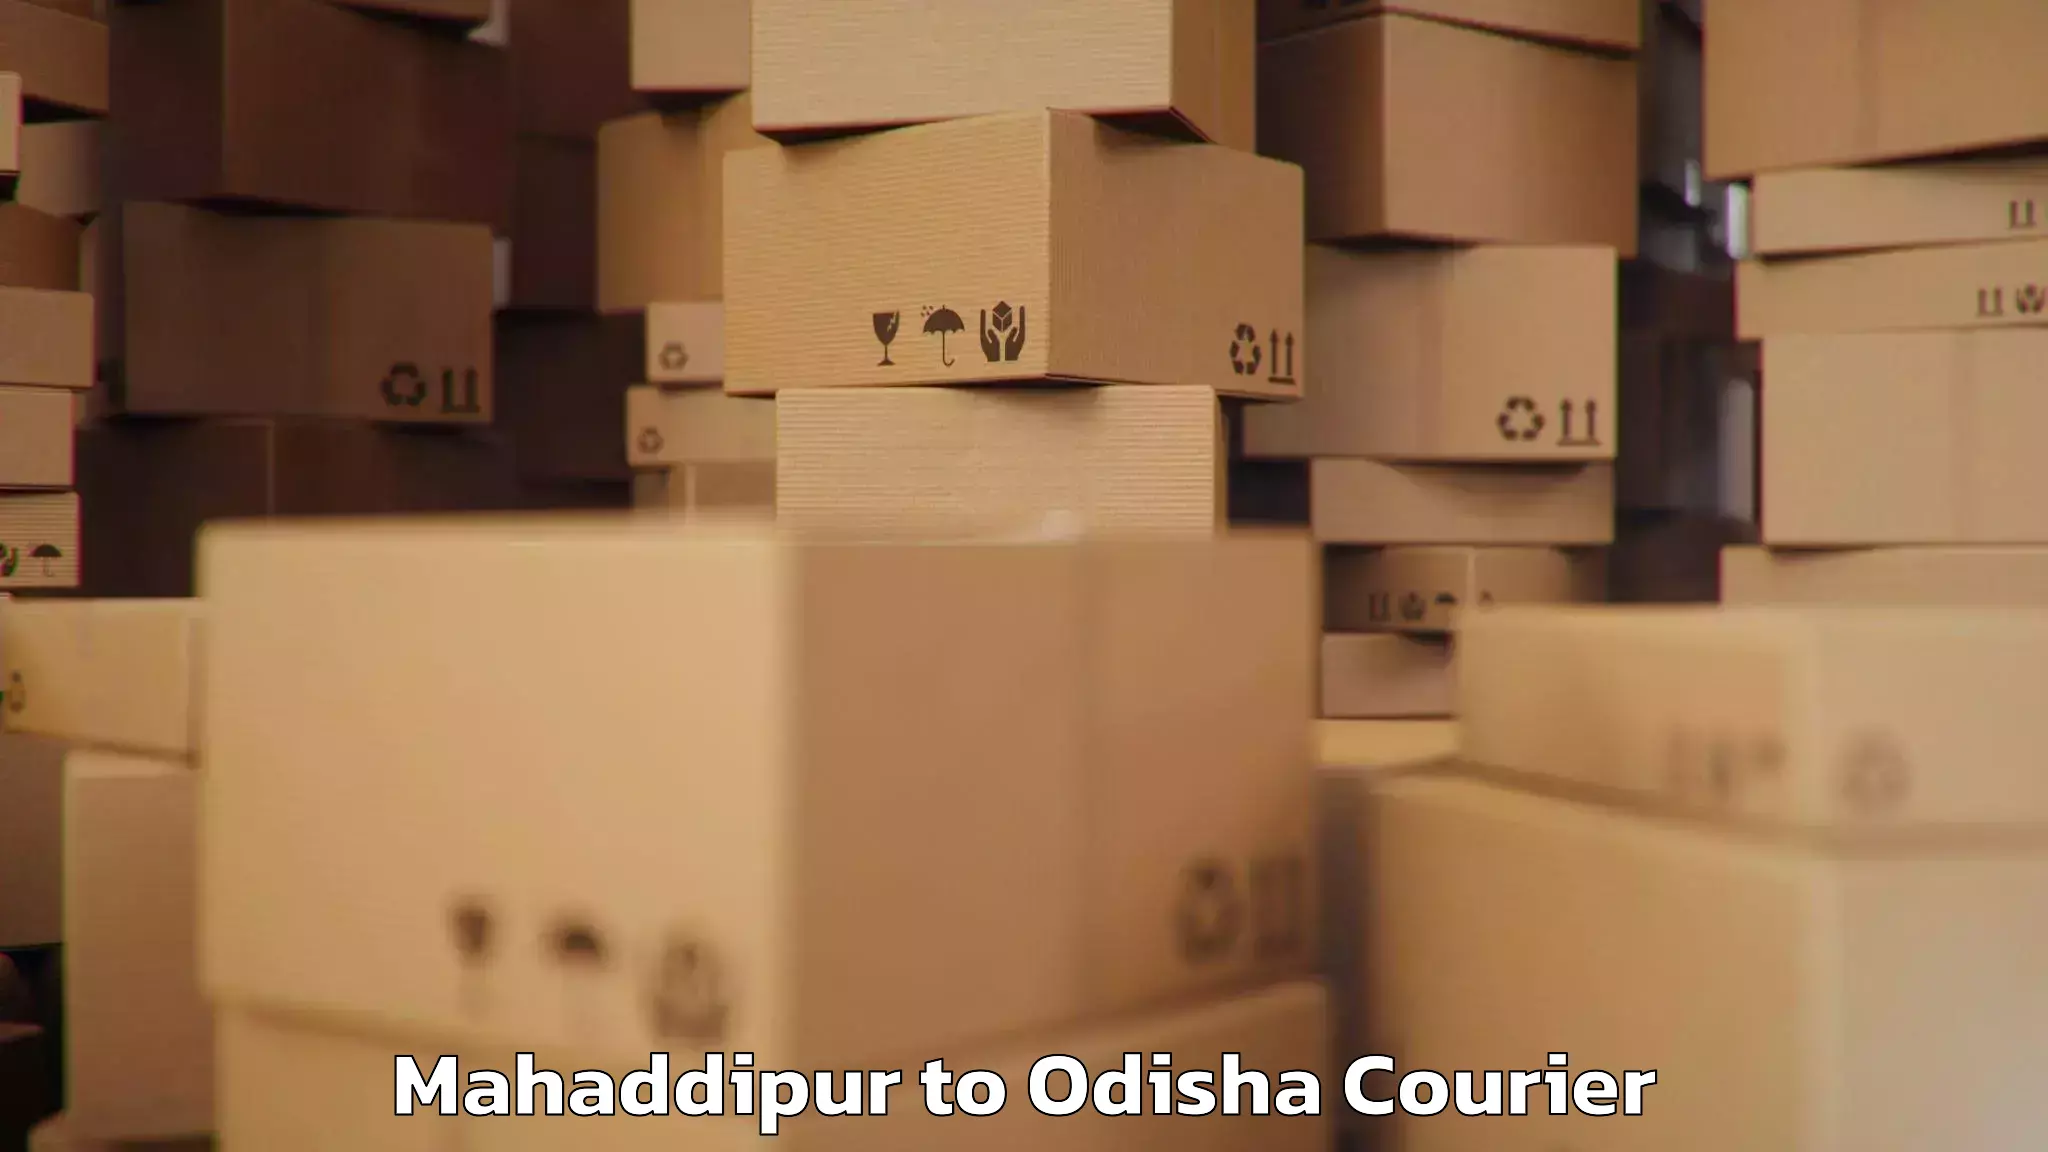 Luggage transport operations Mahaddipur to Odisha